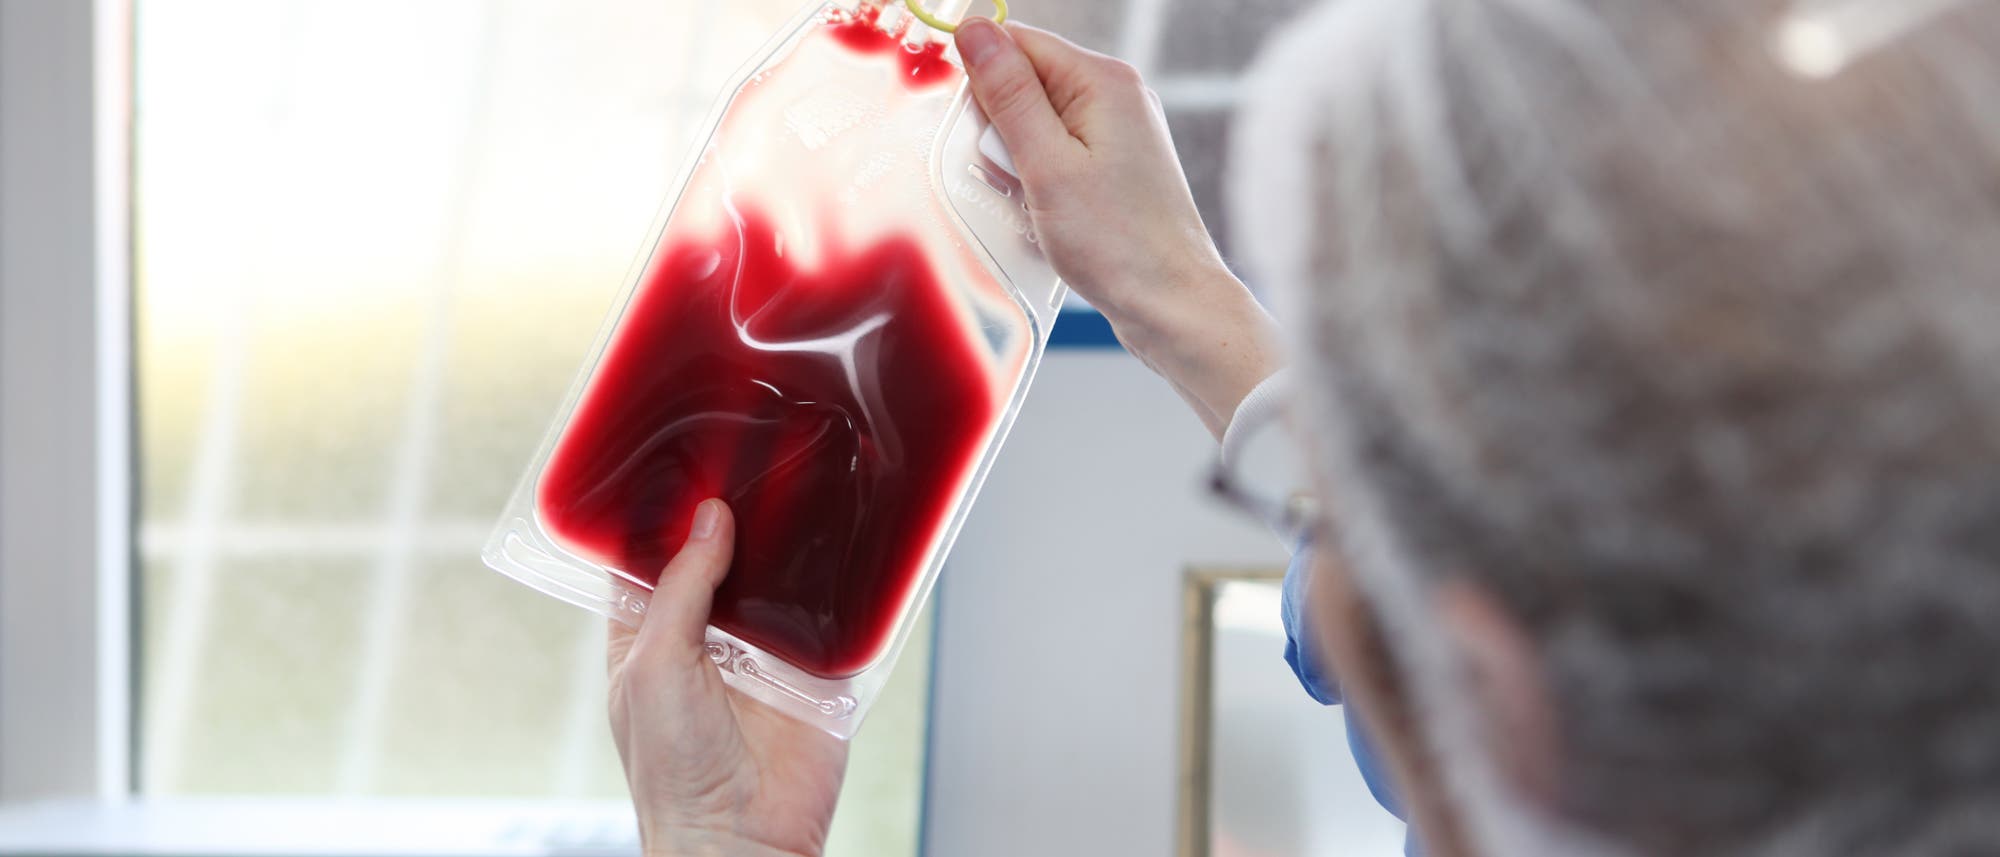 Ein Arzt in Hazmat-Kleidung hält eine Blutkonserve gegens Licht.